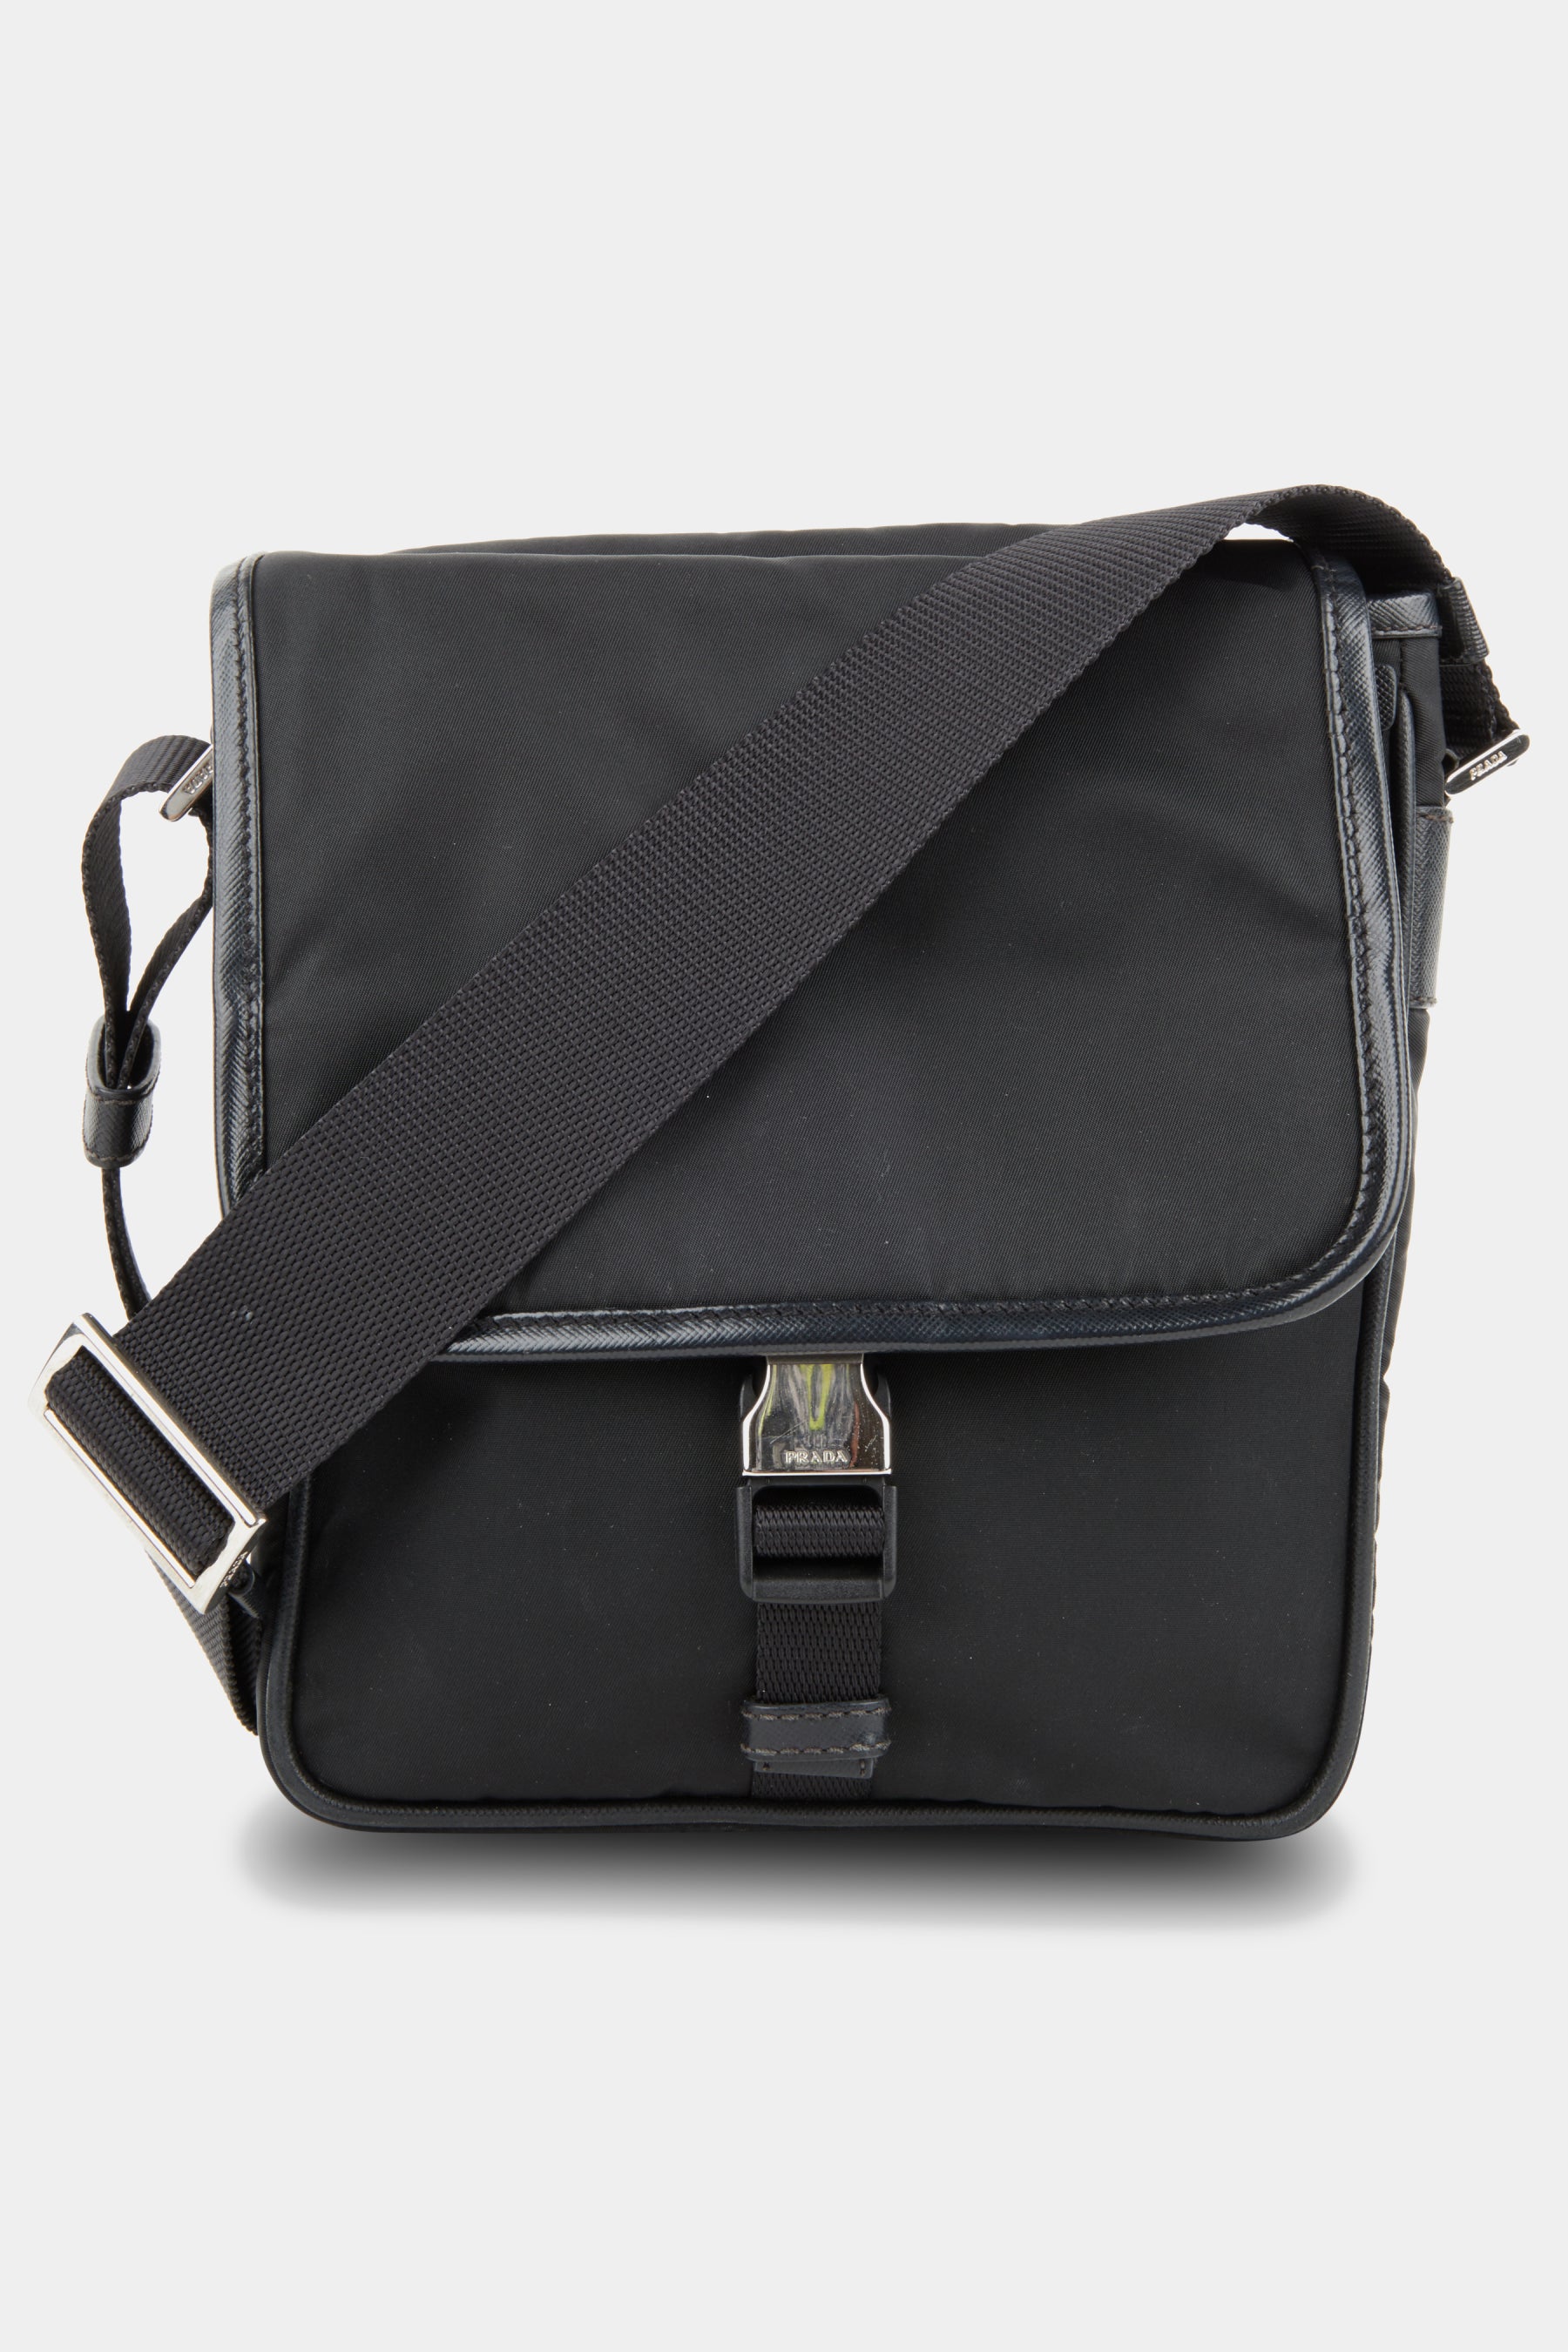 Prada Black Re-Nylon and Saffiano Leather Brique Crossbody Bag Prada | The  Luxury Closet